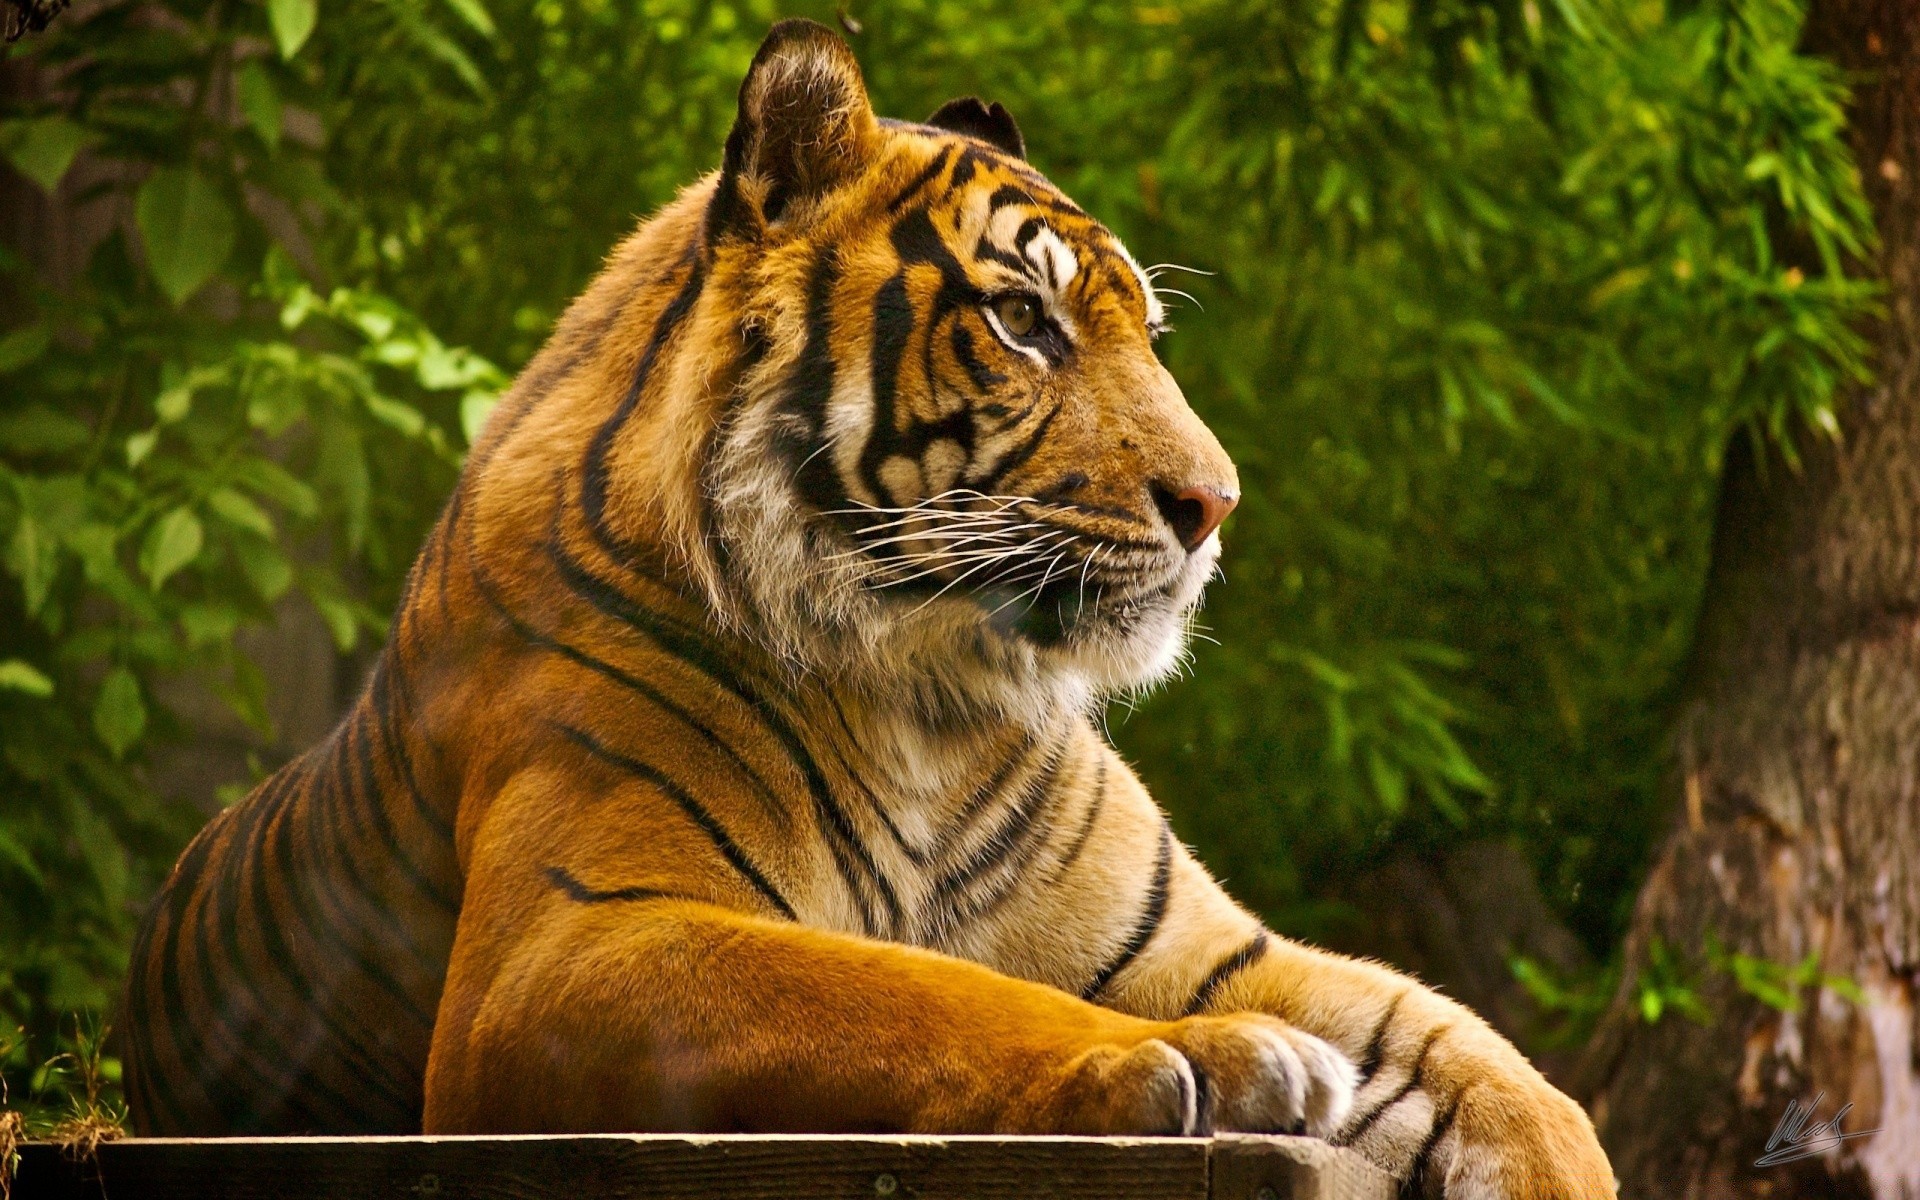 животные тигр кошка джунгли дикой природы хищник большой охотник млекопитающее опасность животное дикий мясоед природа сафари зоопарк мех охота портрет глава злой